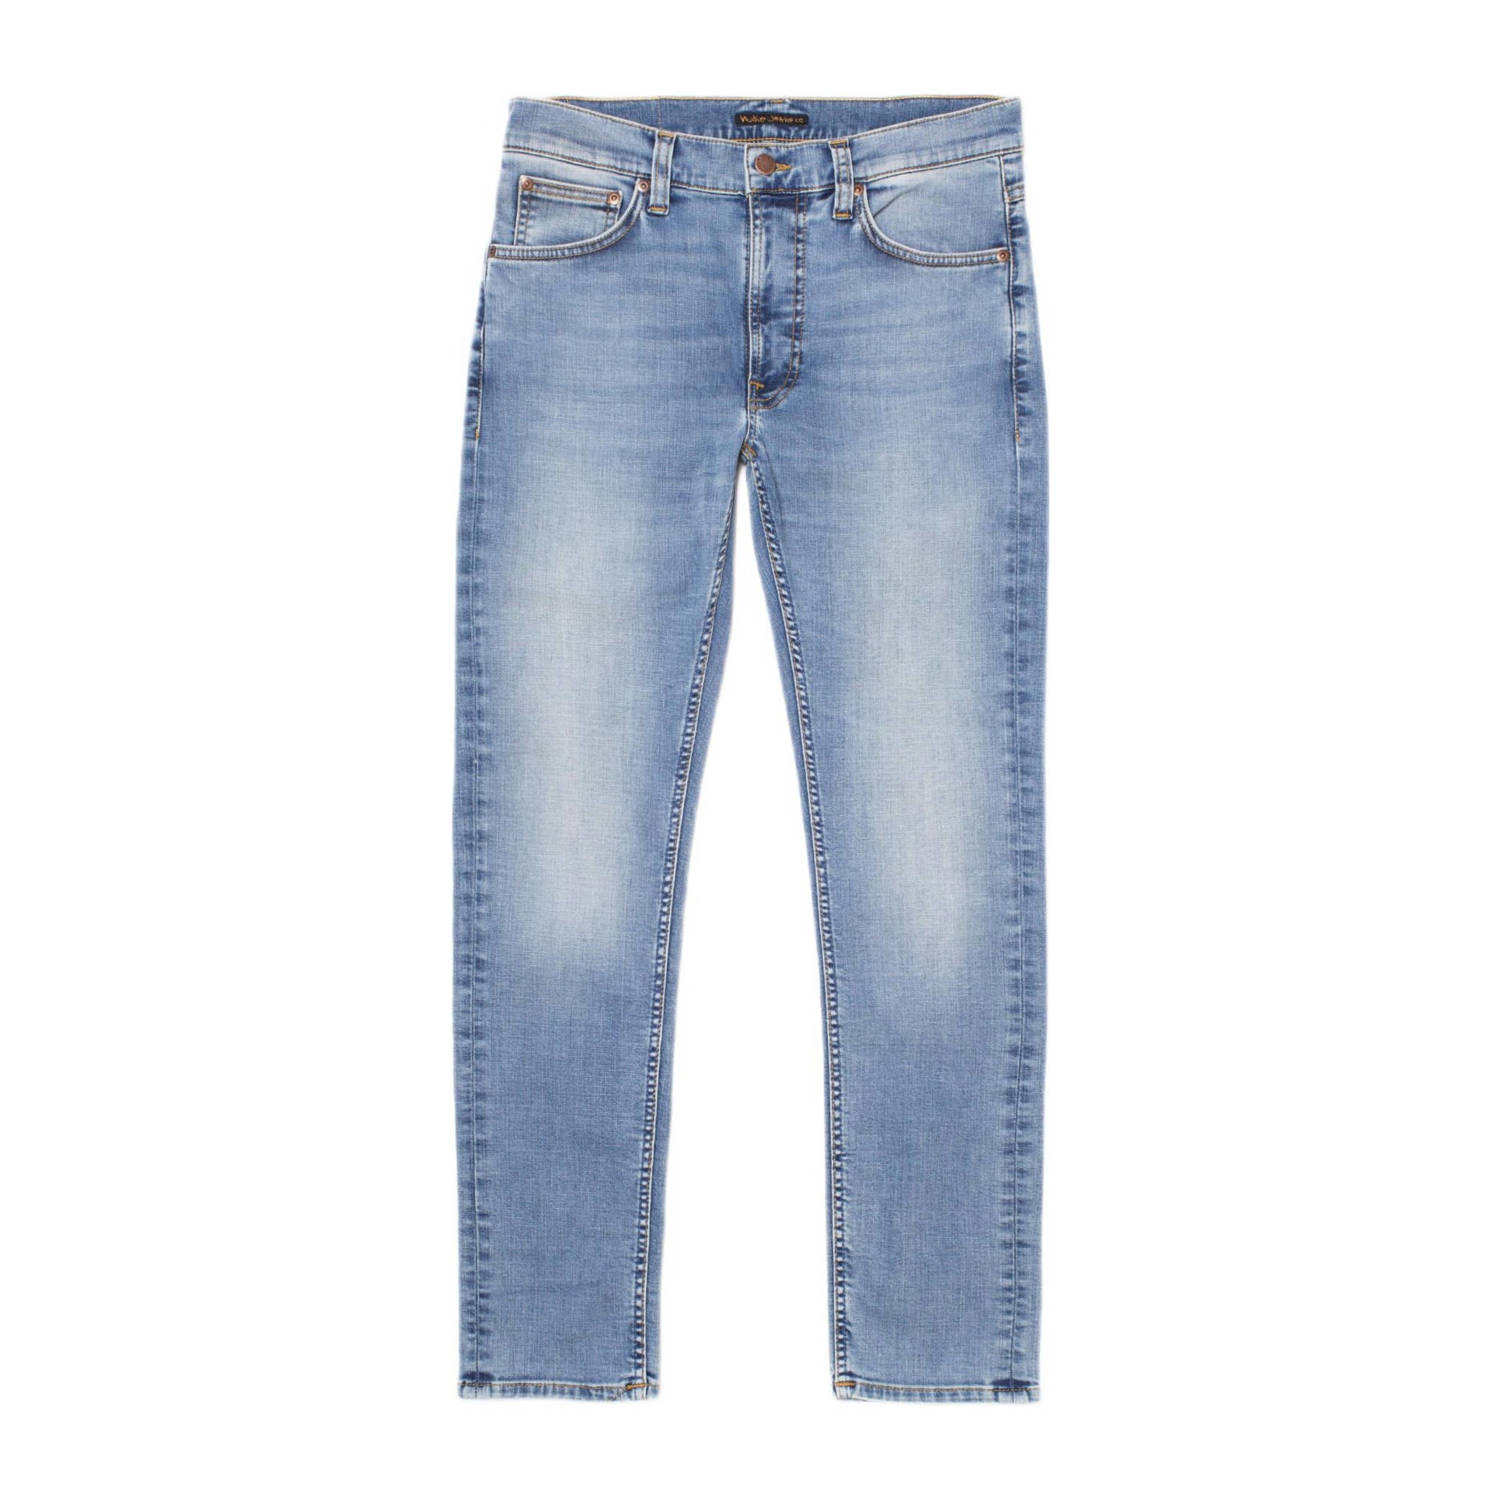 Nudie Jeans slim fit jeans Lean Dean broken blue